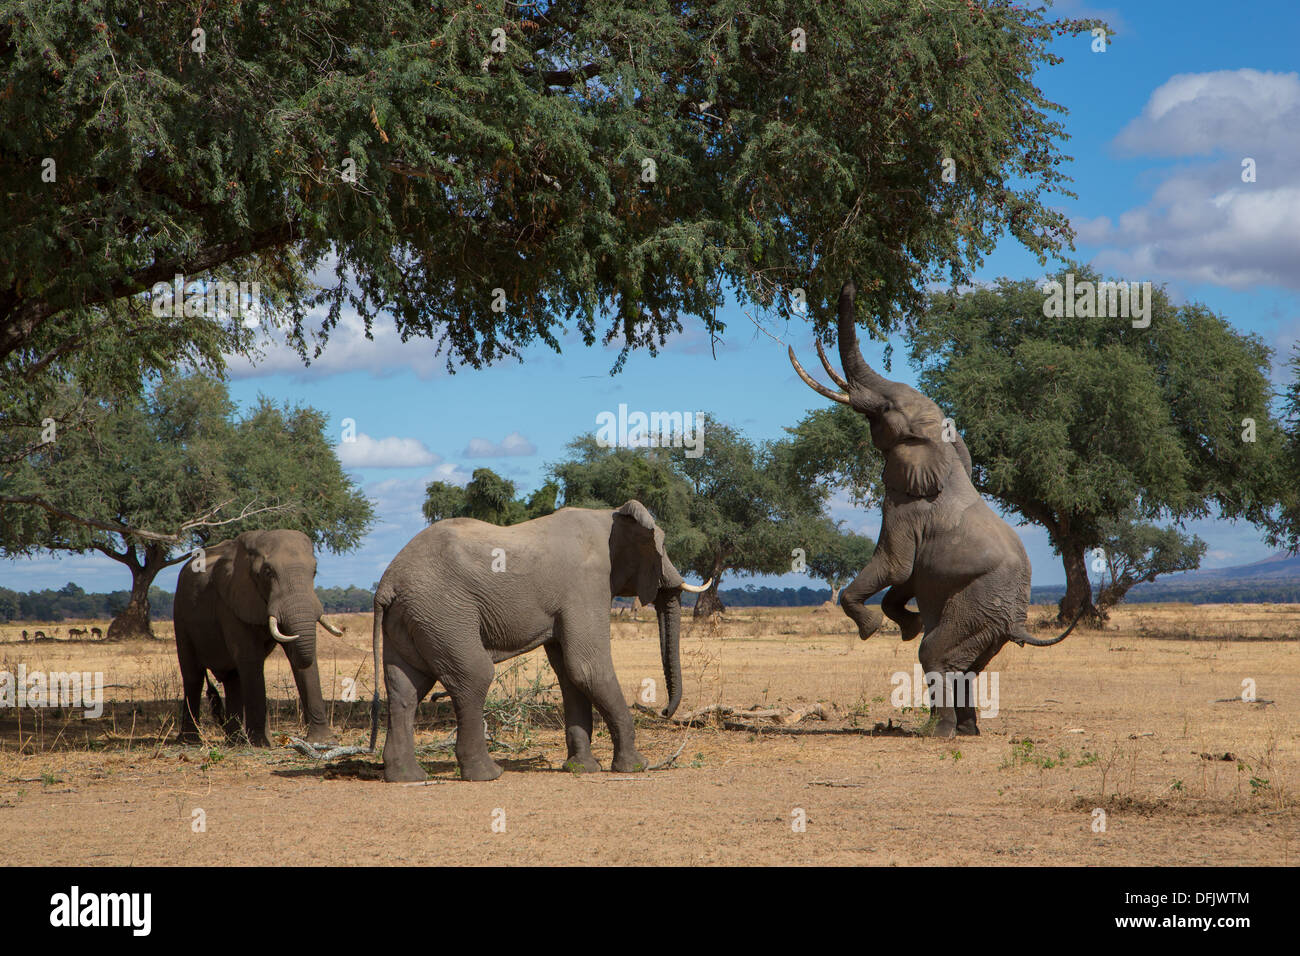 Trois éléphants africains navigation à partir d'un arbre - un éléphant représente sur son dos les jambes jusqu'à atteindre Banque D'Images